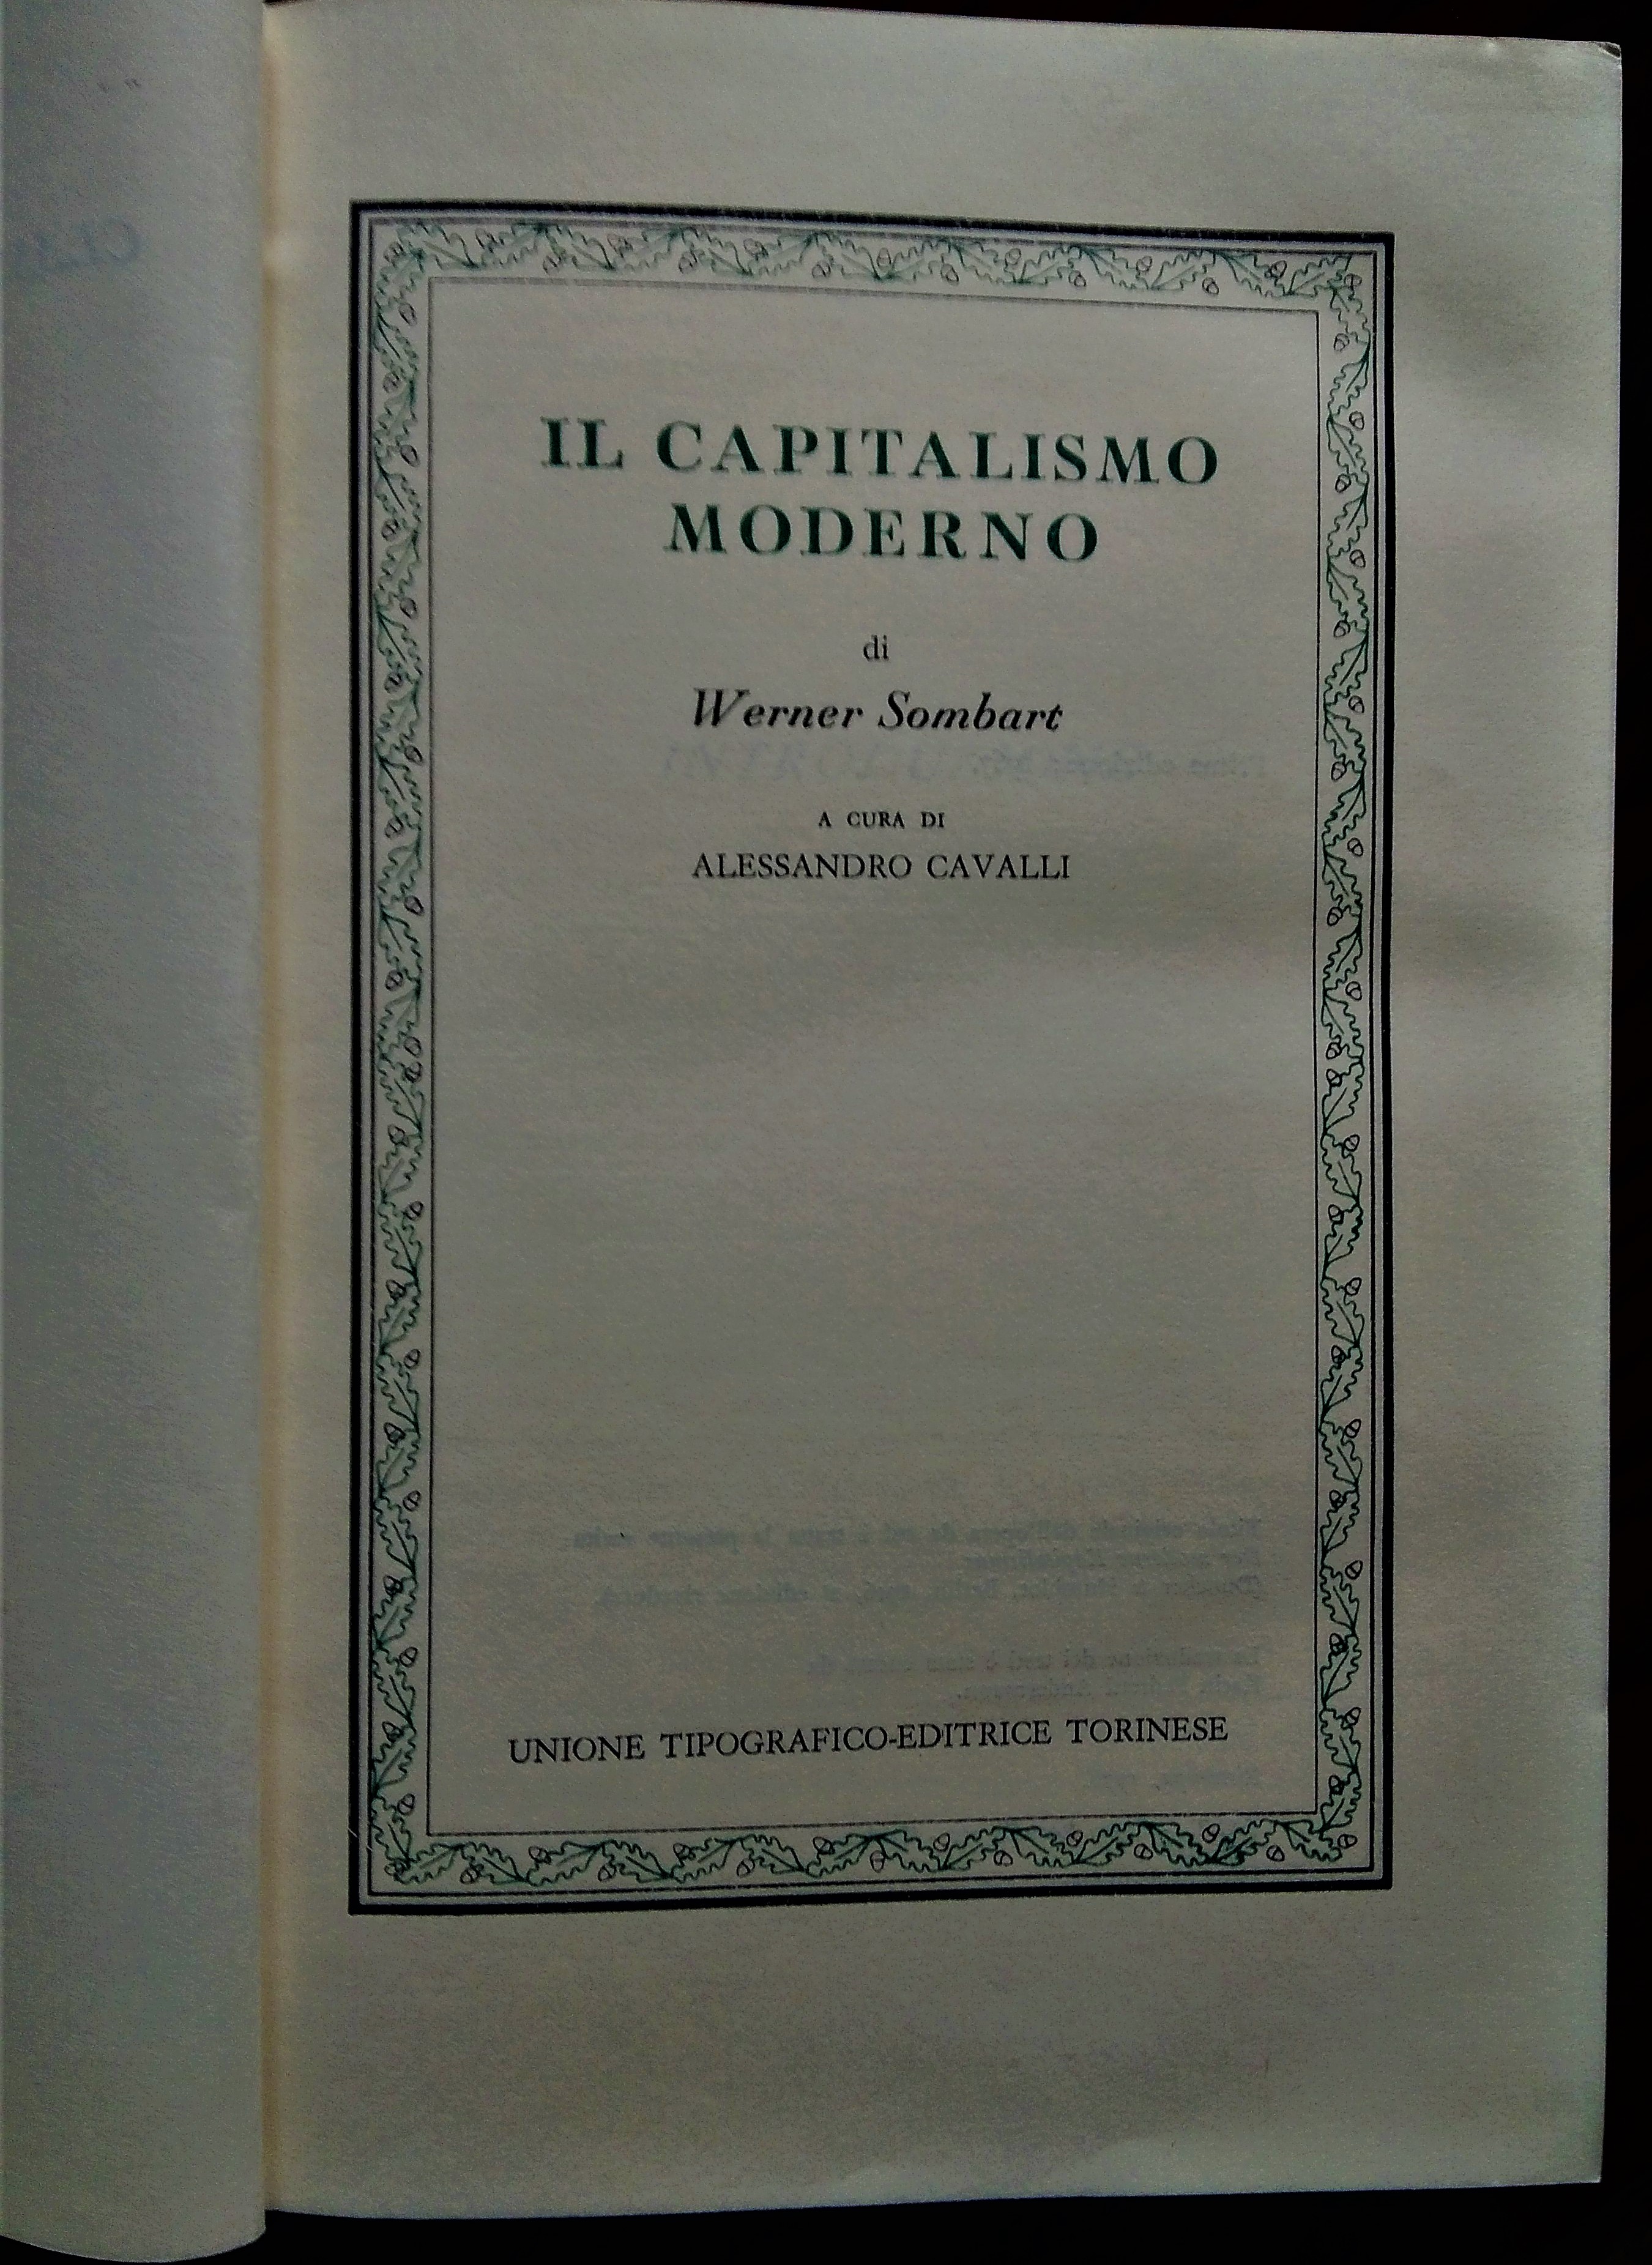 Il capitalismo moderno. A cura di Alessandro Cavalli.